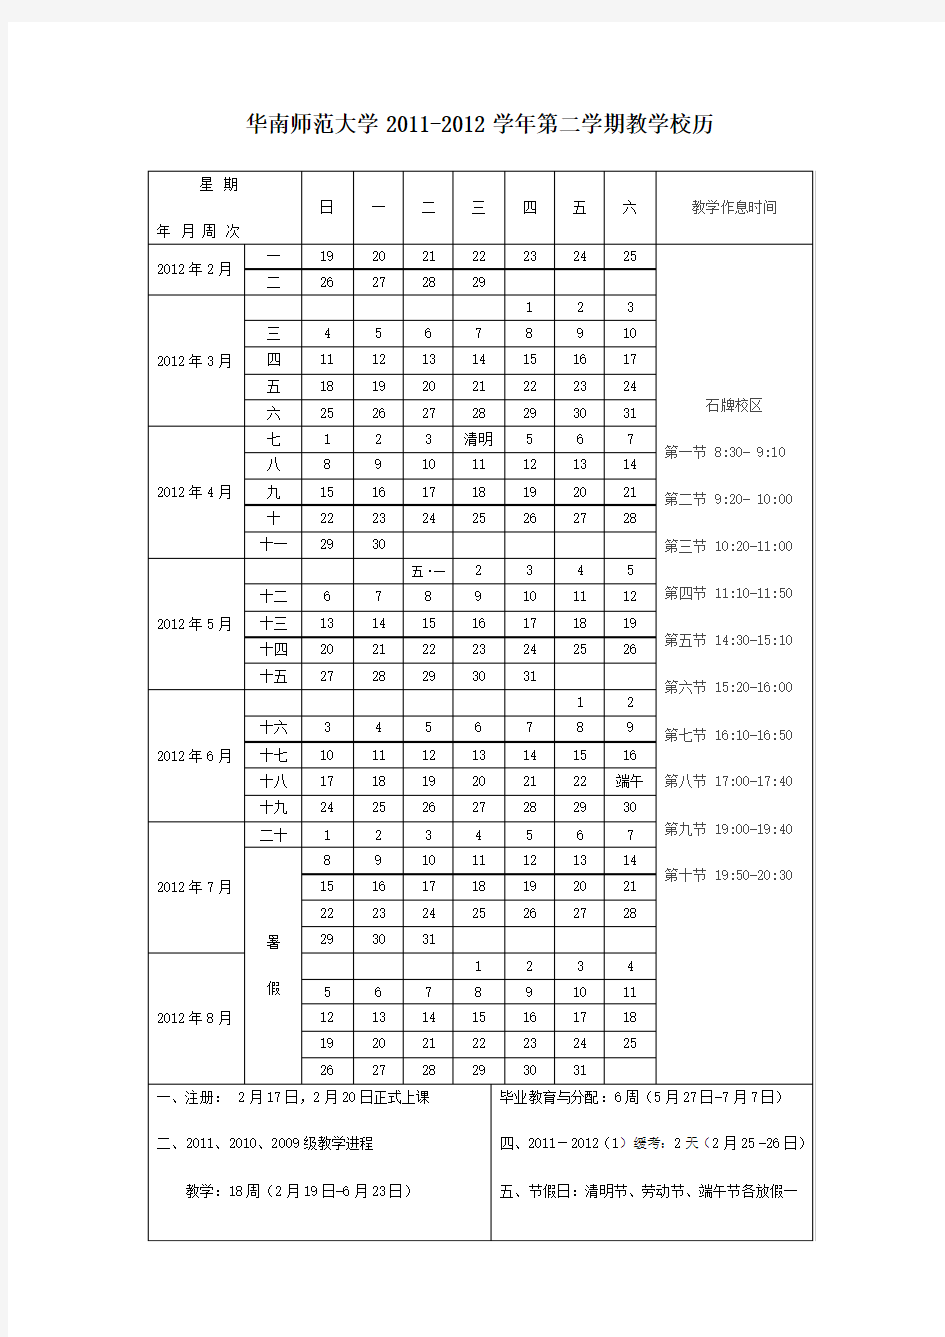 华南师范大学2012年的校历